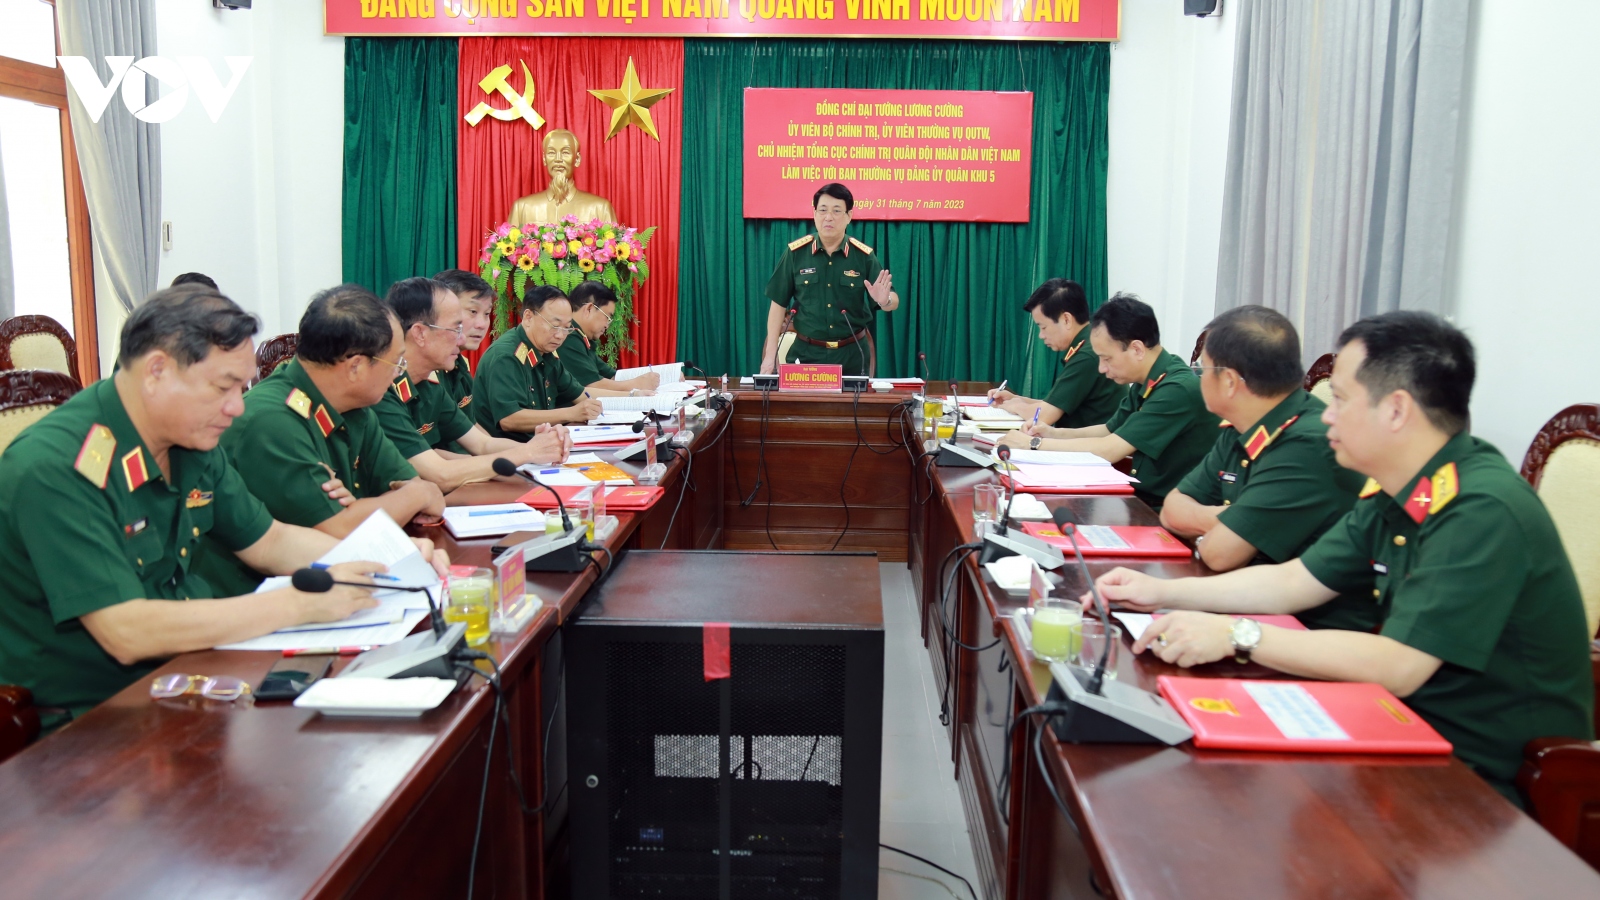 Đại tướng Lương Cường làm việc với Ban Thường vụ Đảng ủy Quân khu 5